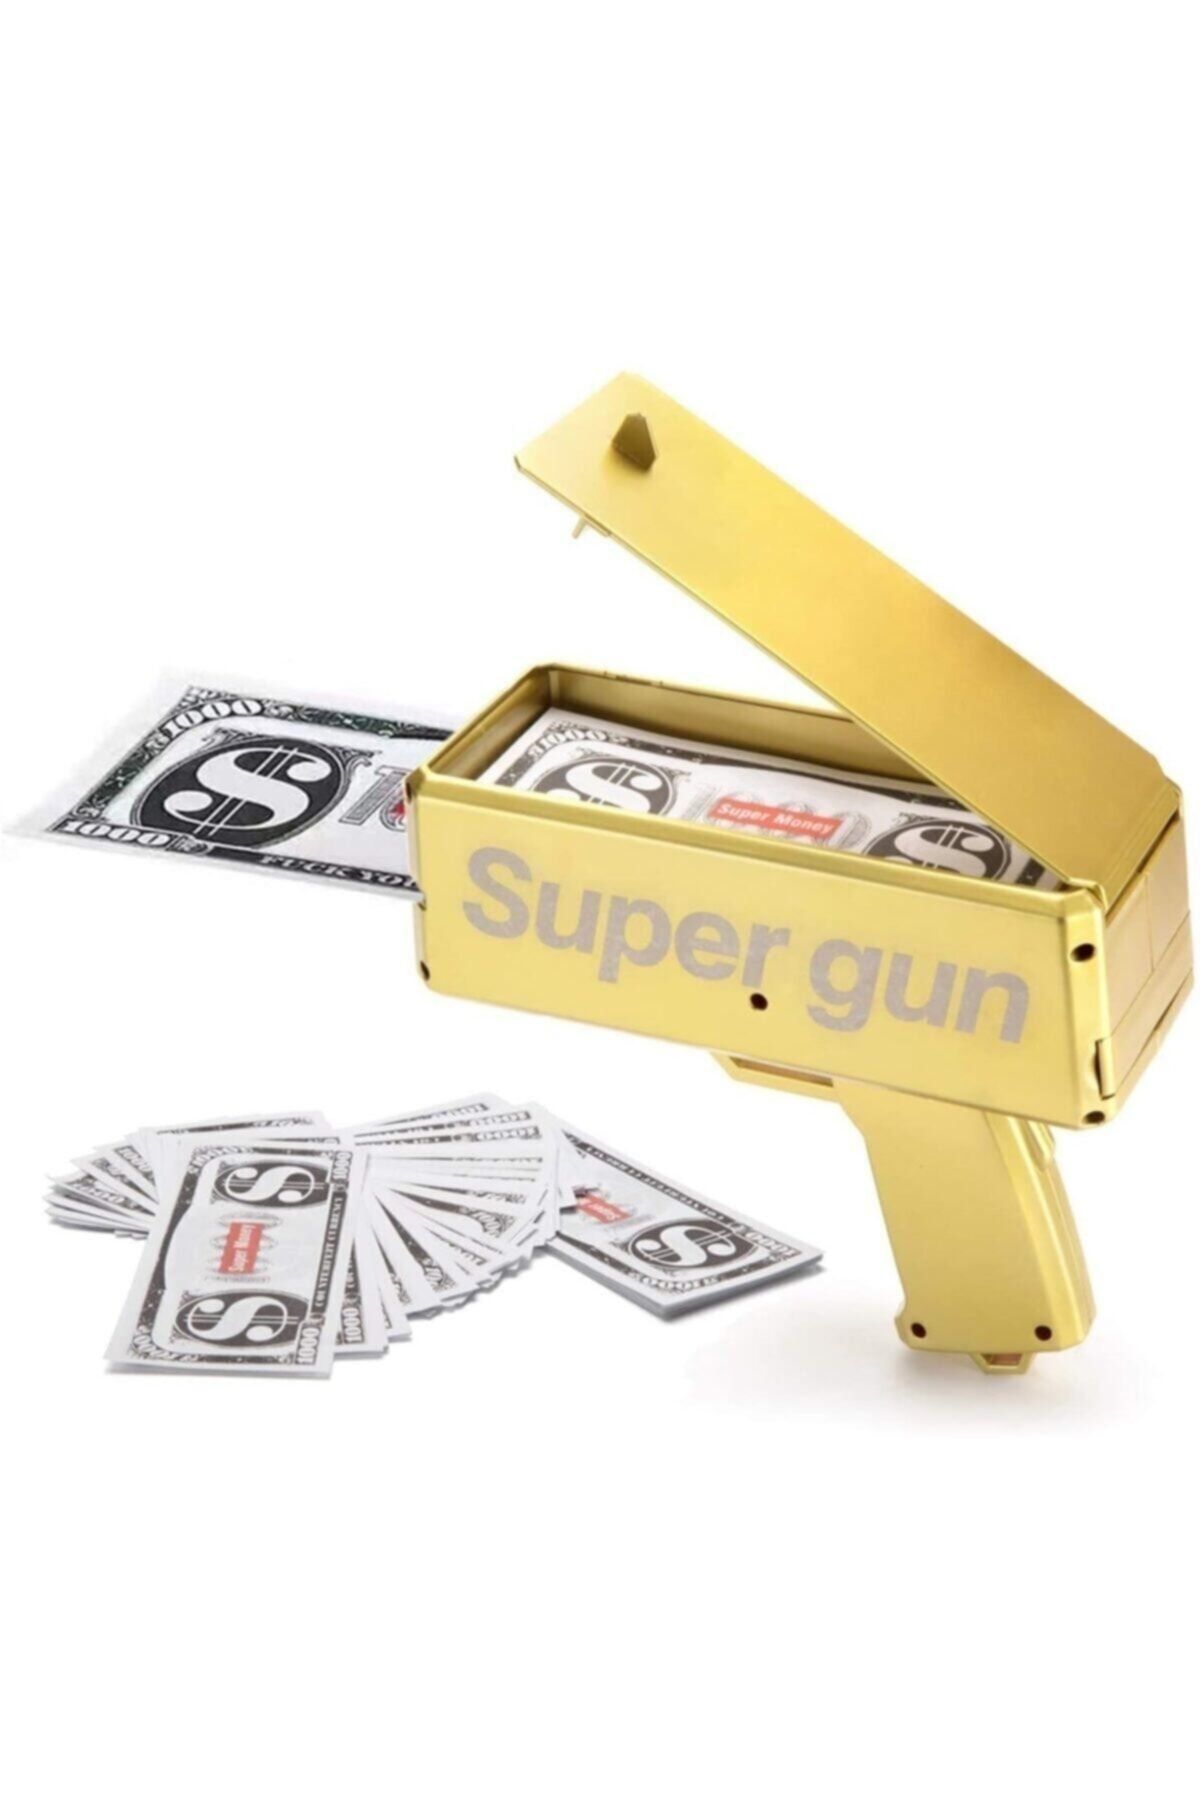 HEPBİMODA Super Money Gun Para Saçma Tabancası Gold